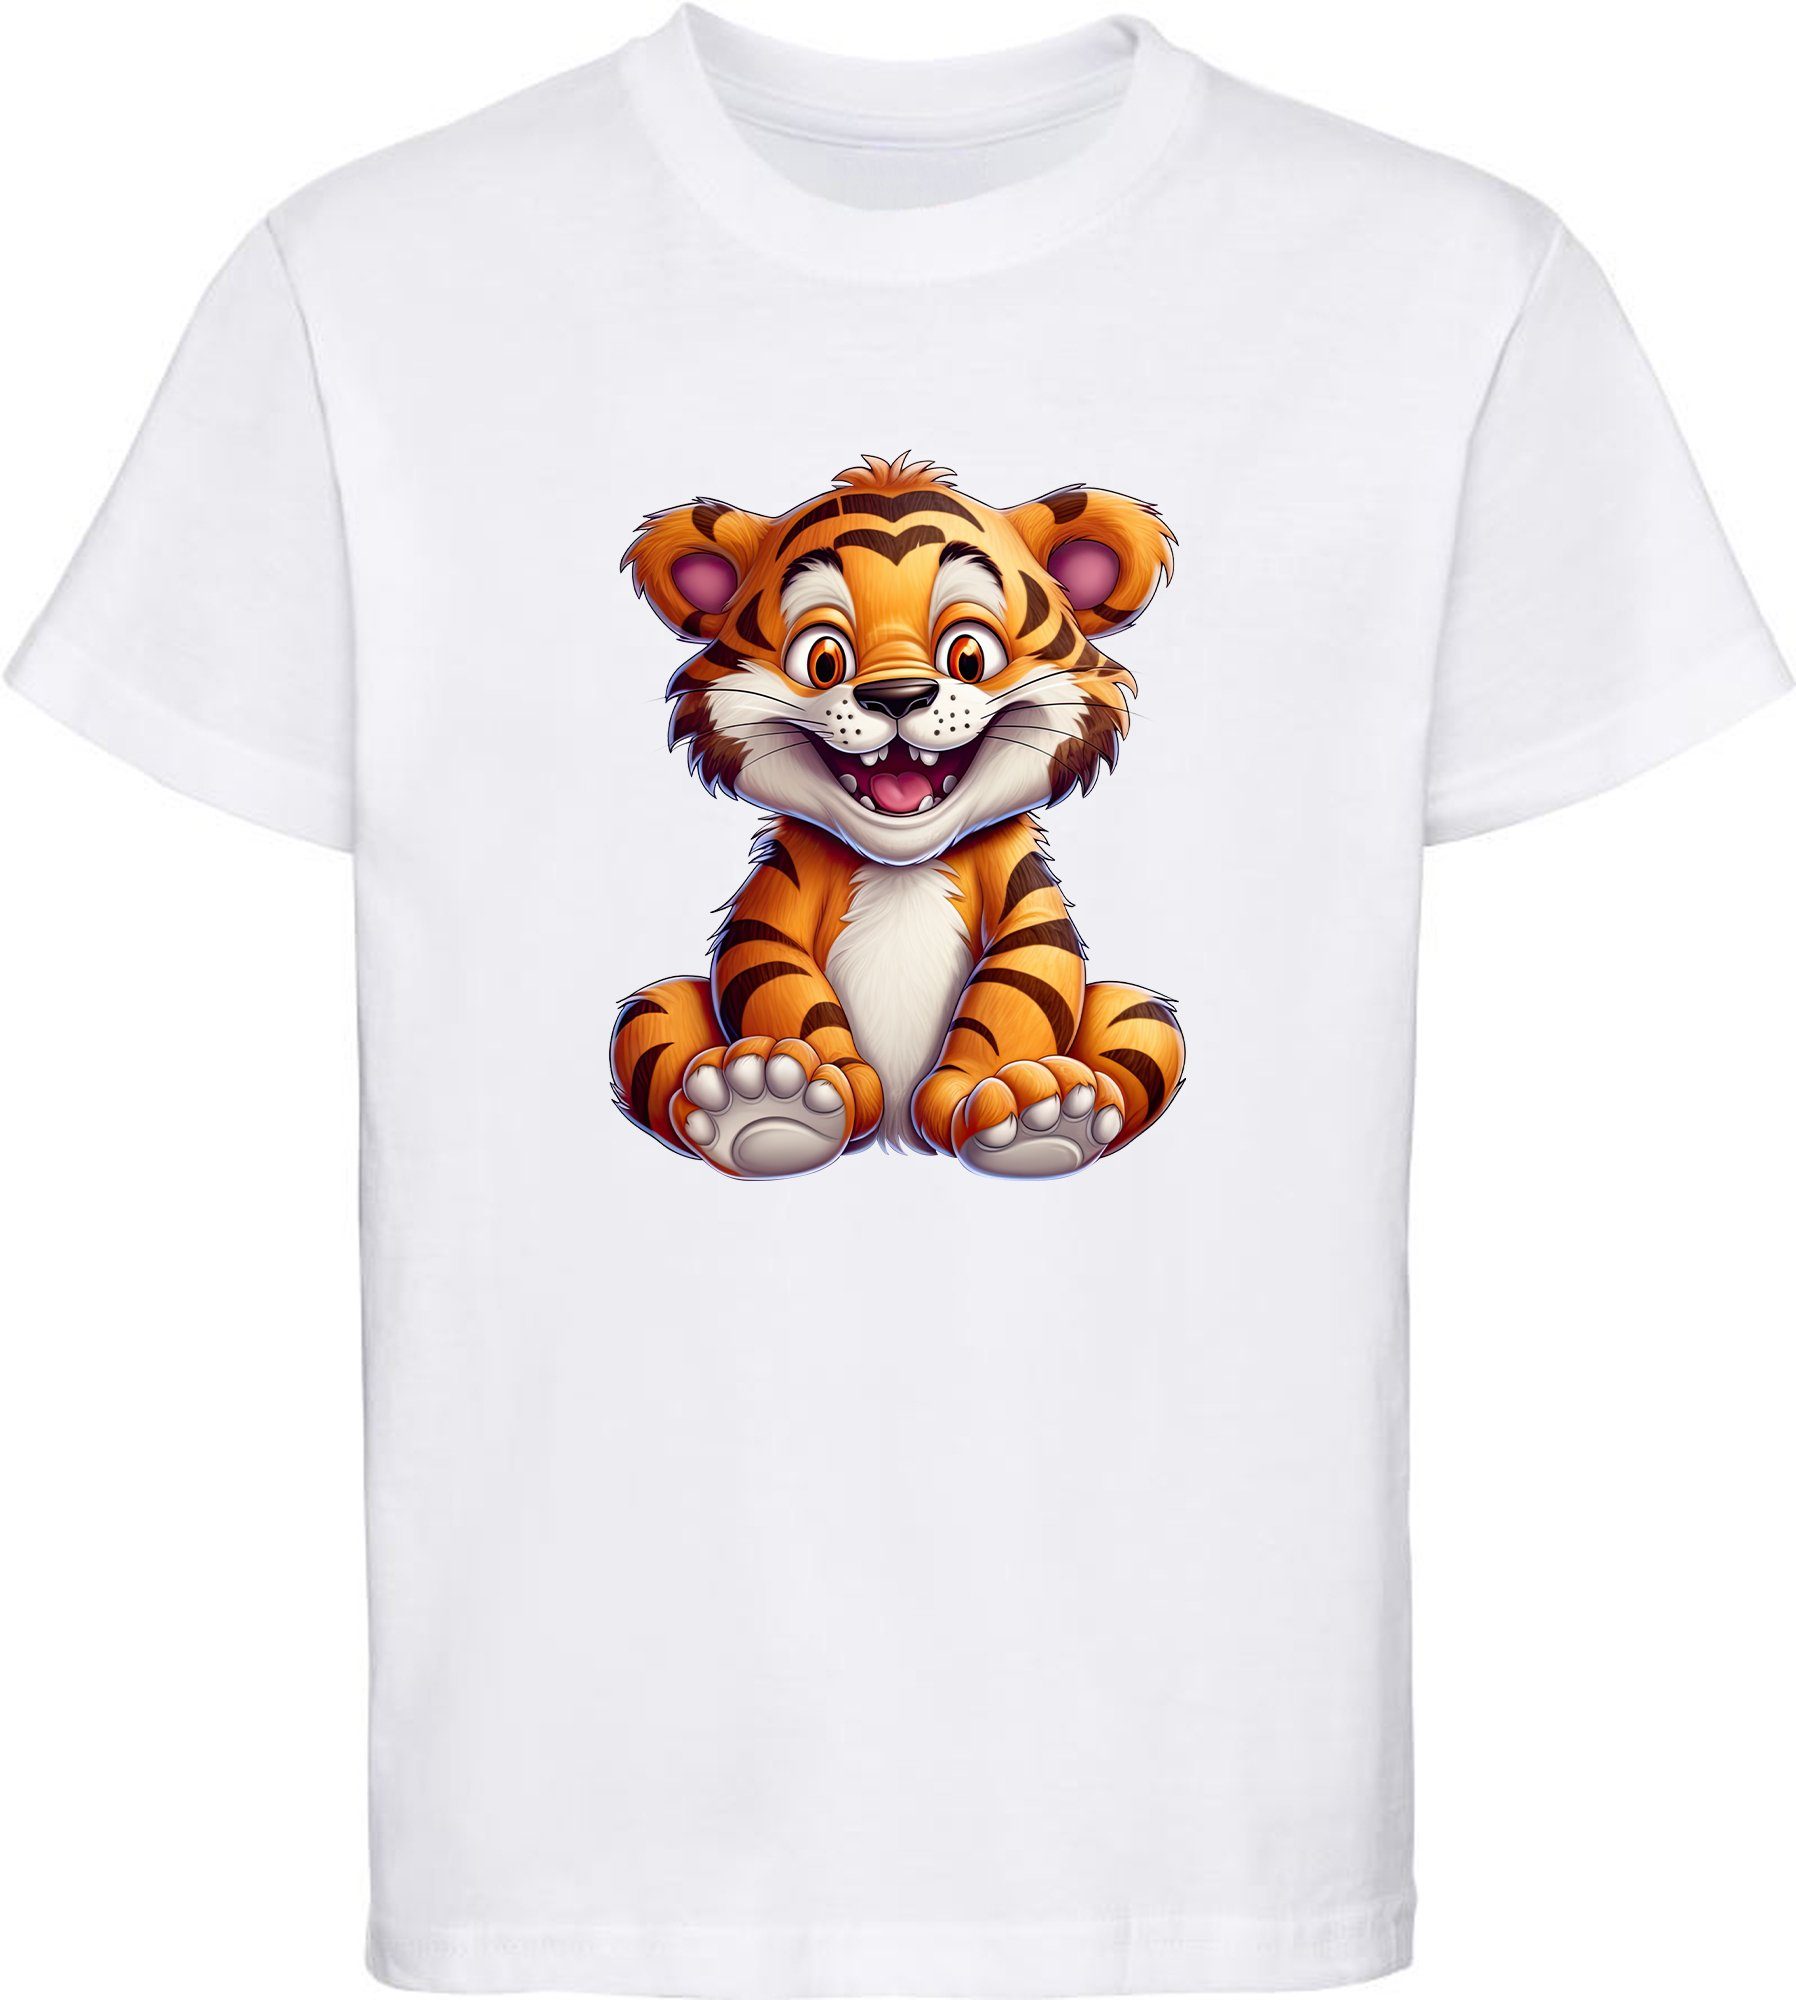 MyDesign24 - Baby i278 Shirt weiss Wildtier Baumwollshirt Aufdruck, bedruckt mit Print Kinder Tiger T-Shirt